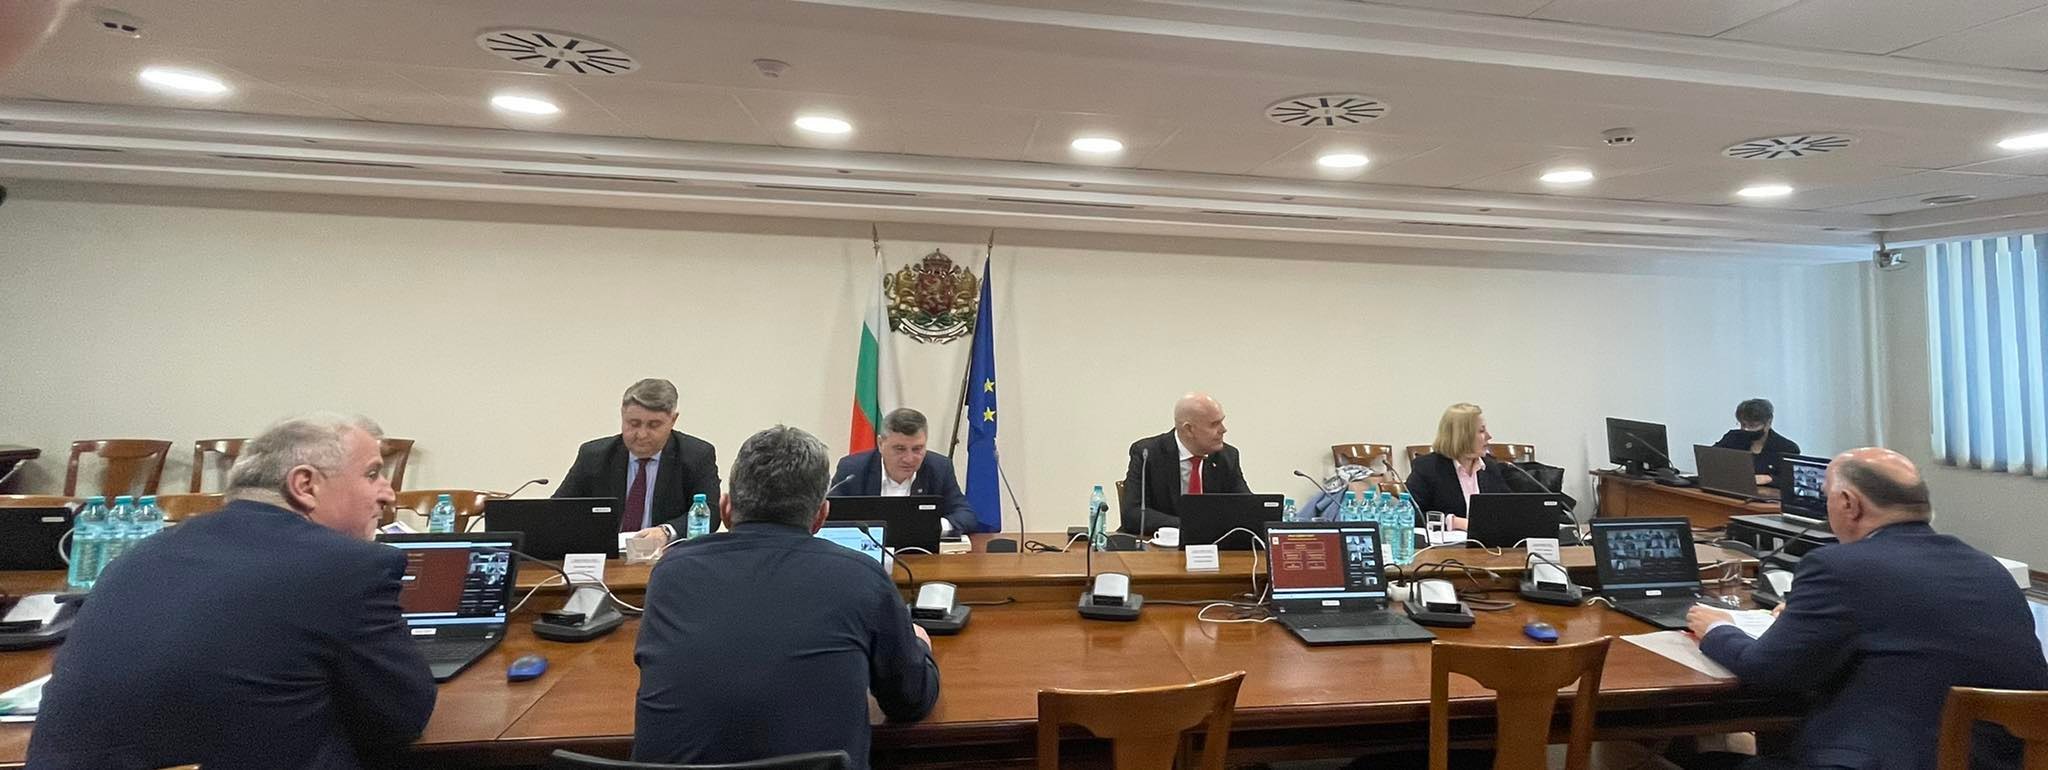 Демократична България: Пленумът на Висшия съдебен съвет